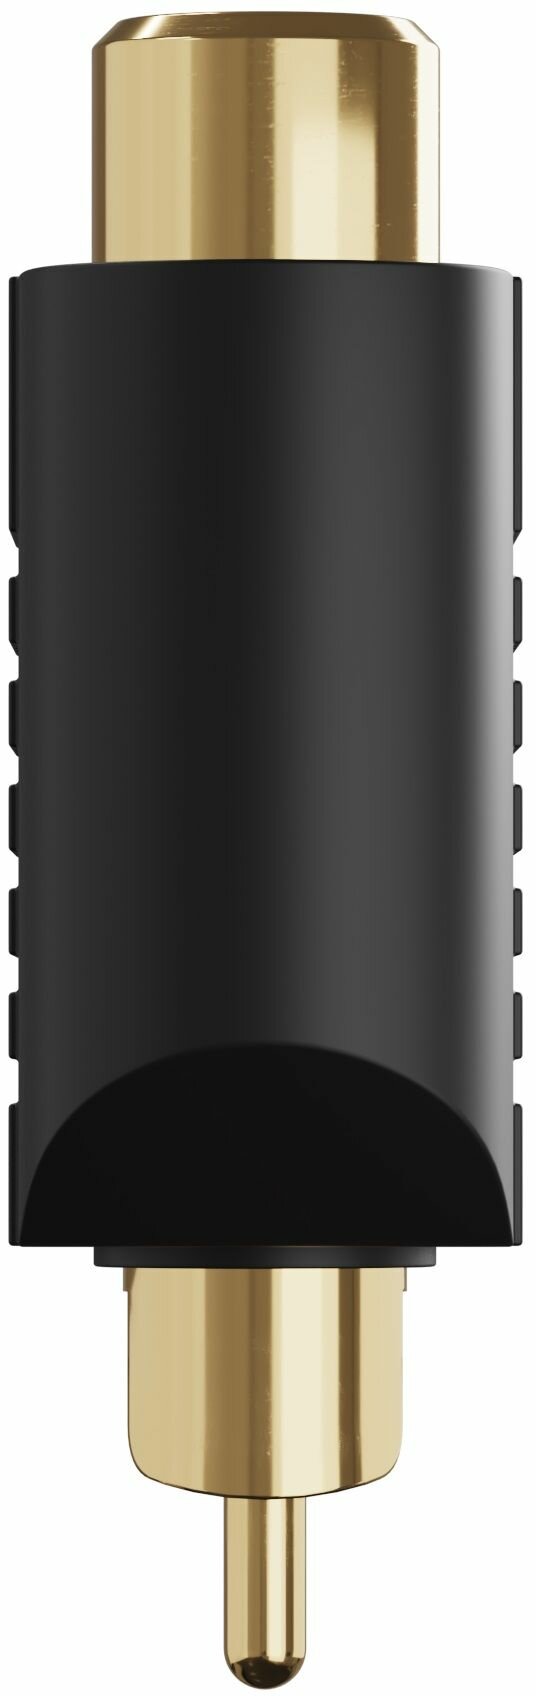 Адаптер переходник разветвитель GSMIN A91 RCA тюльпан (M) - 2 x RCA (F) тюльпана (Черный)